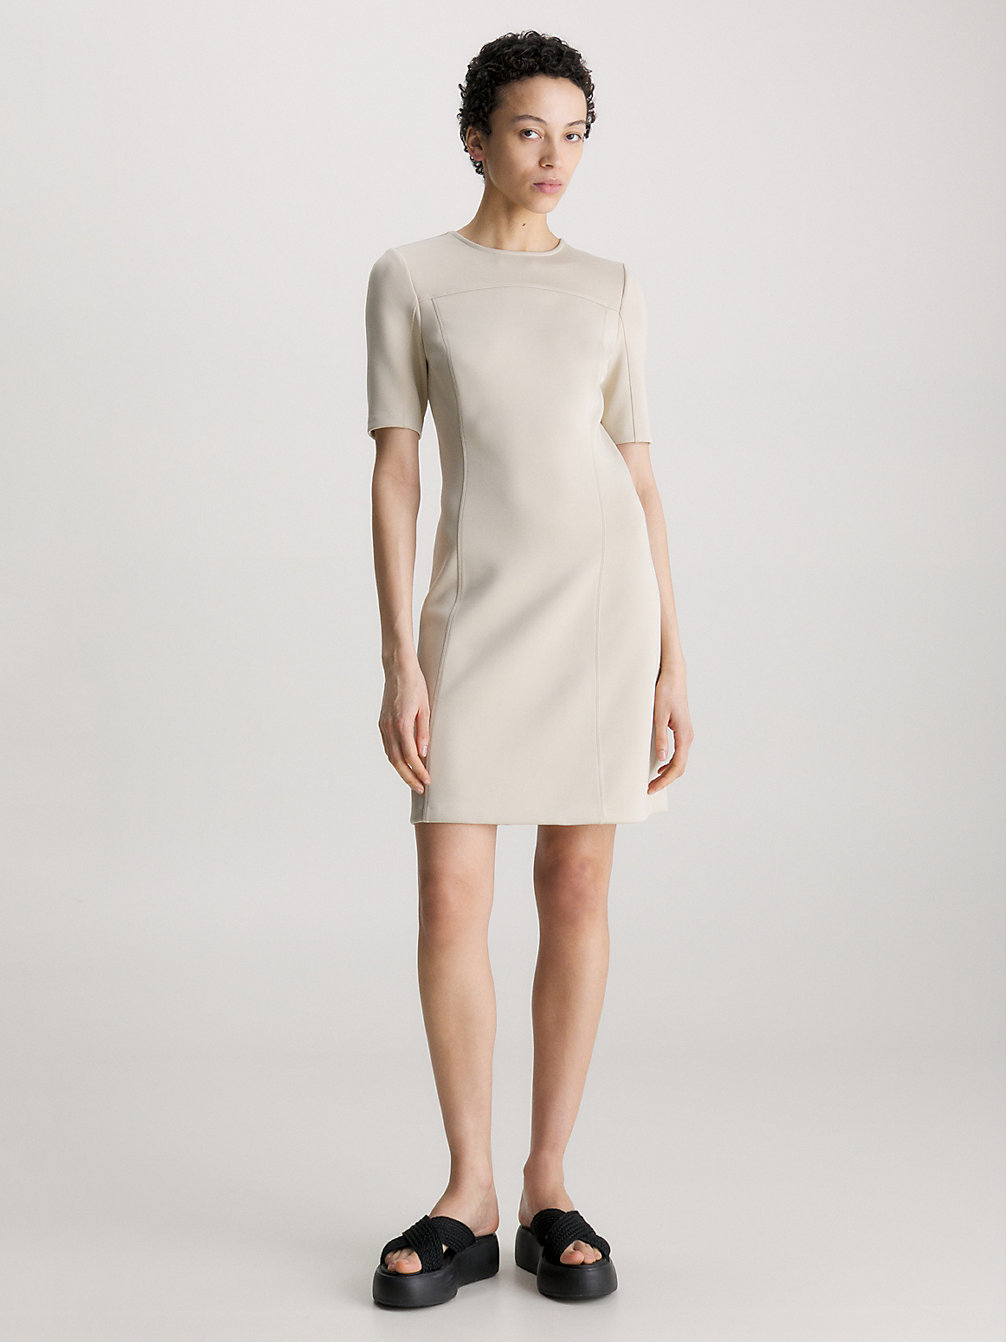 SMOOTH BEIGE Slim Technical Knit Mini Dress undefined women Calvin Klein